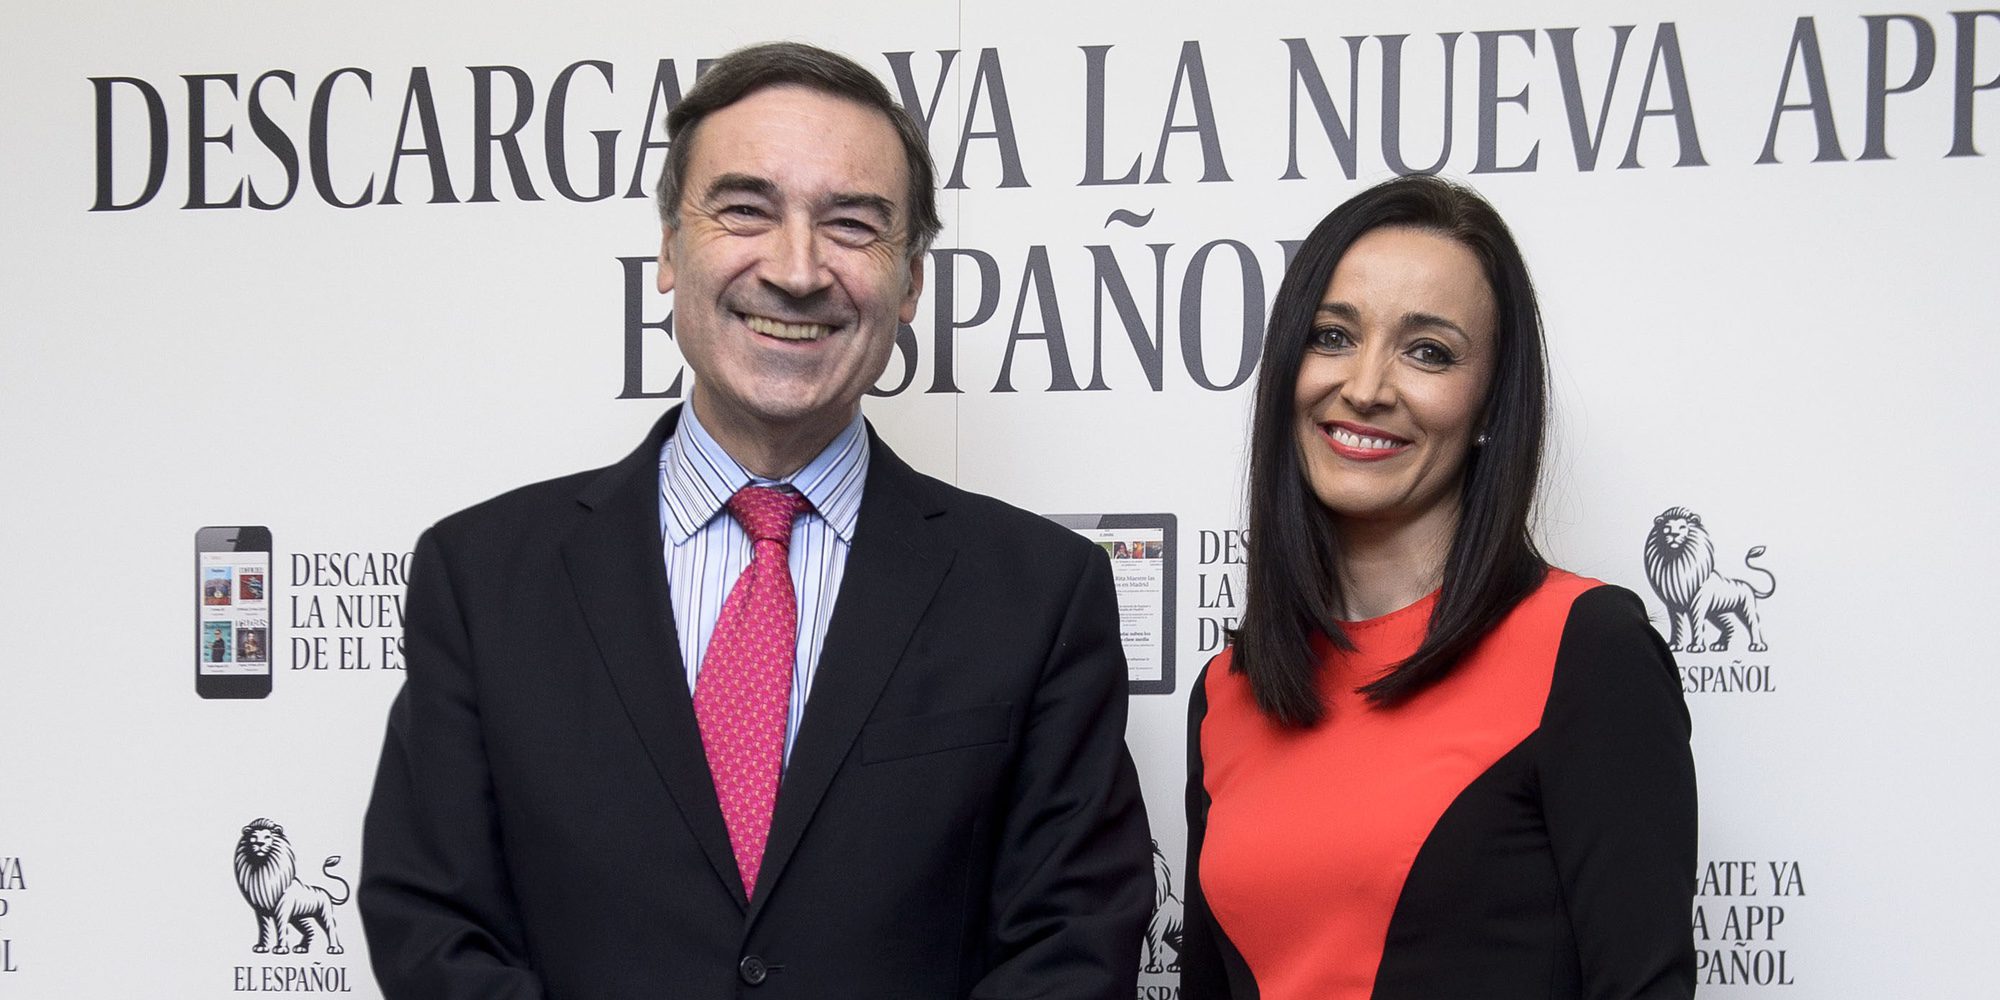 Pedro J. Ramírez y Cruz Sánchez de Lara, risa nerviosa y miradas cómplices en su primer posado